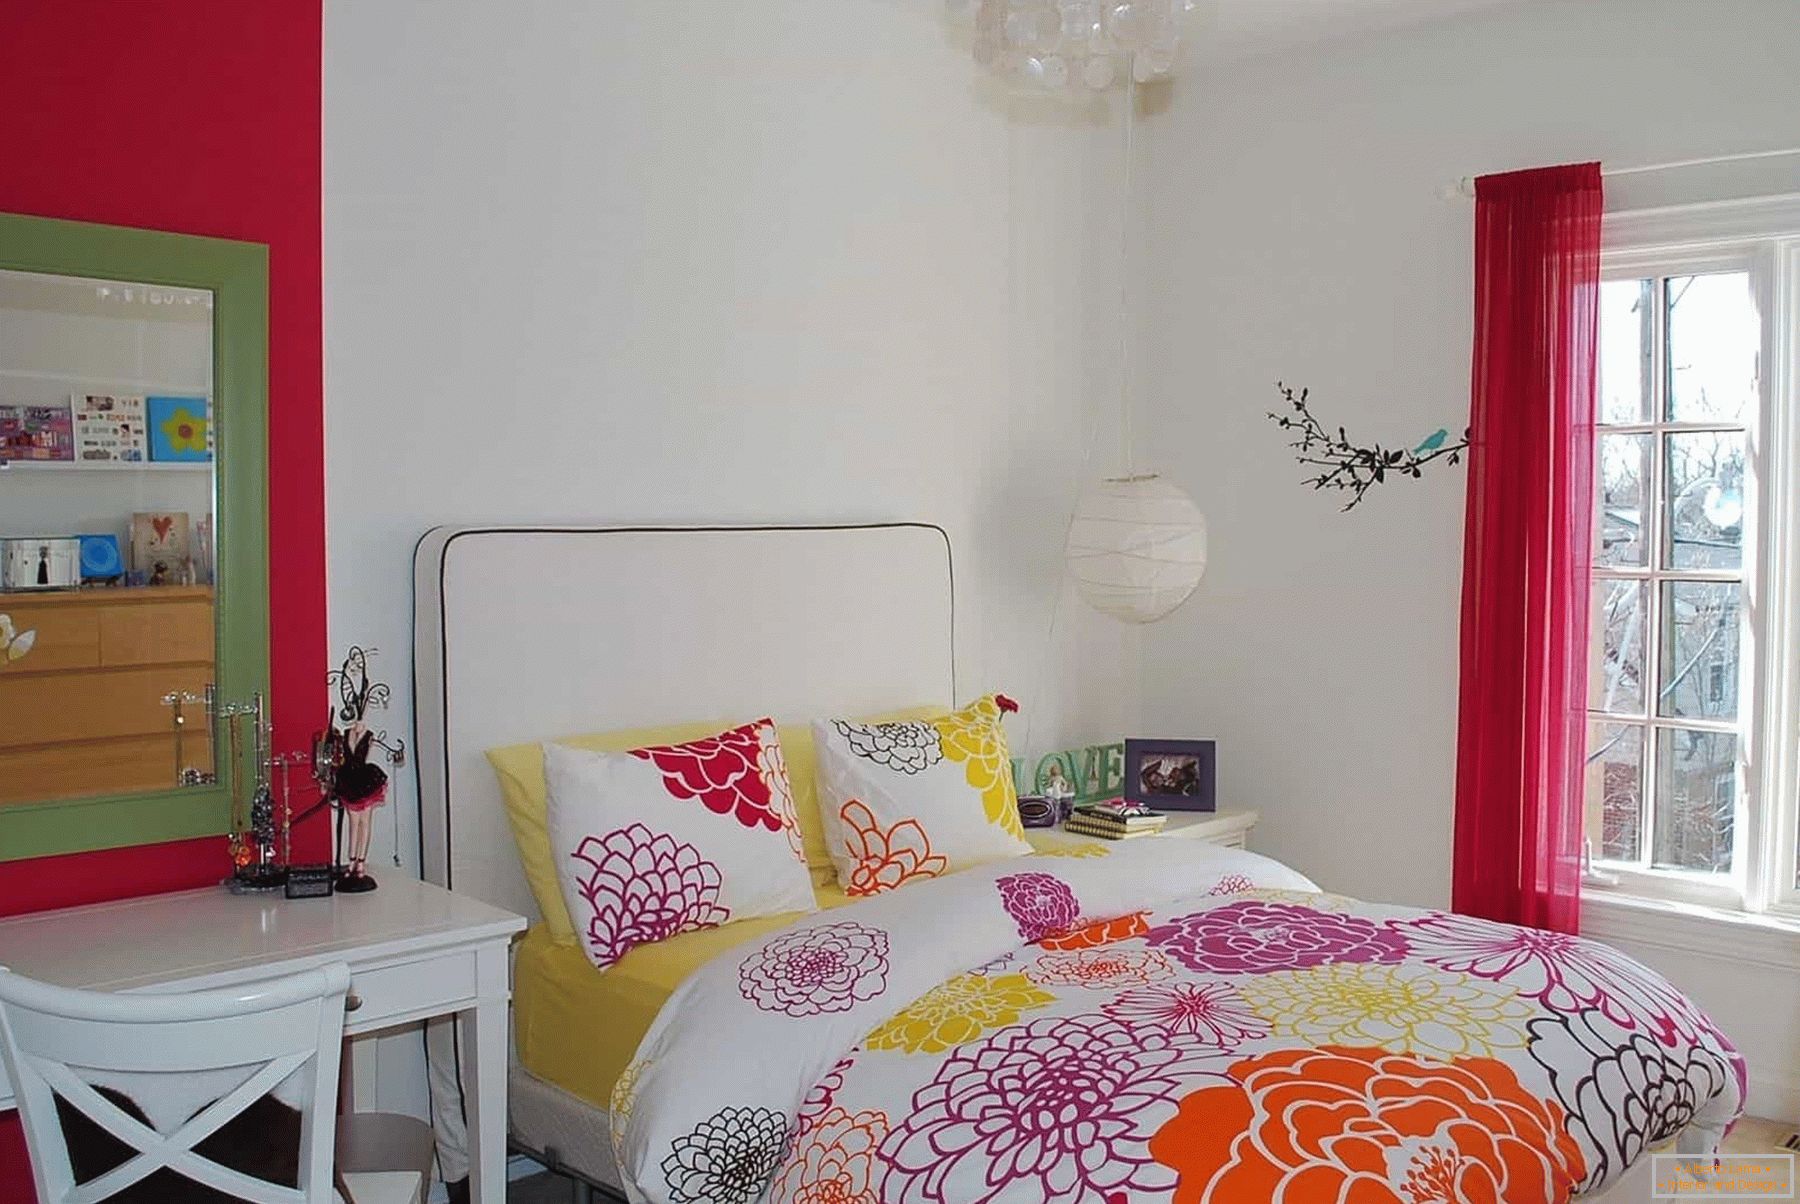 En la habitación blanca de una adolescente - ropa de cama de colores y elementos de decoración